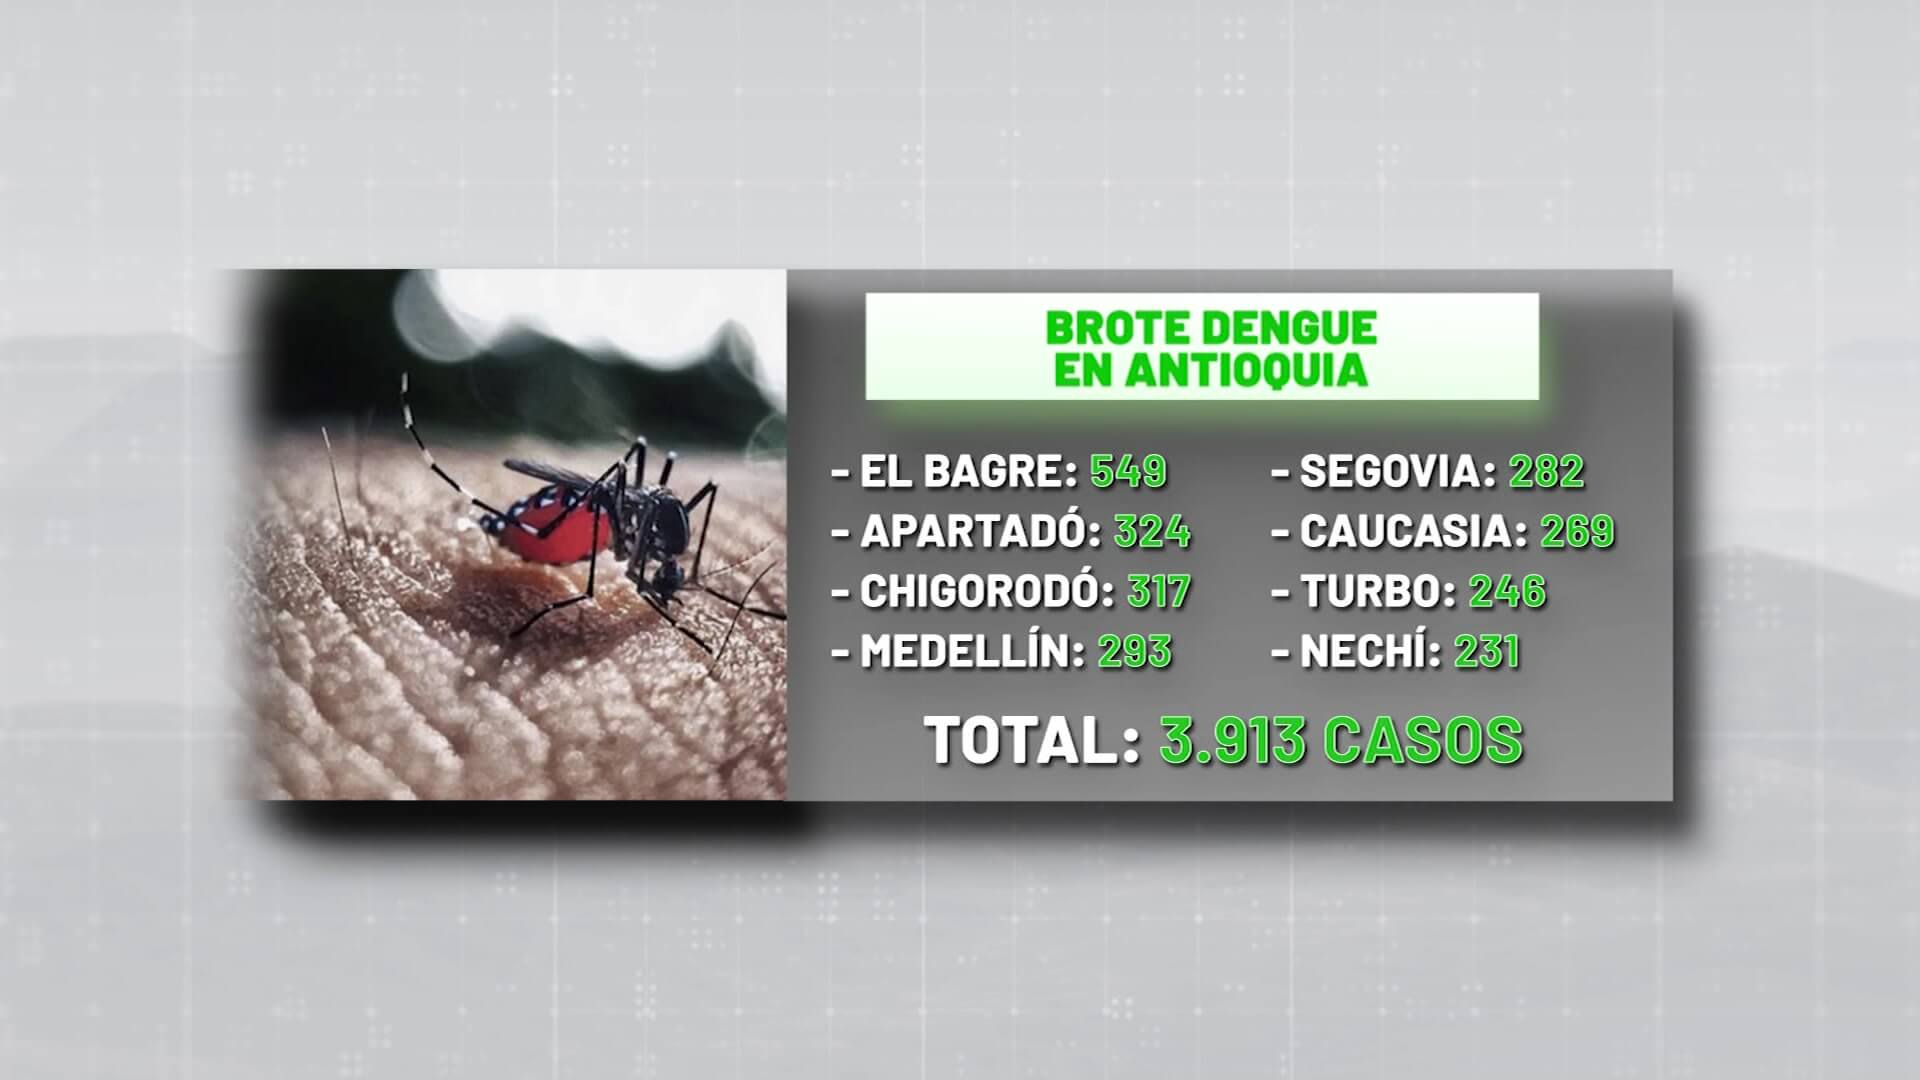 Alerta por brote de dengue: Antioquia tiene 3.913 casos